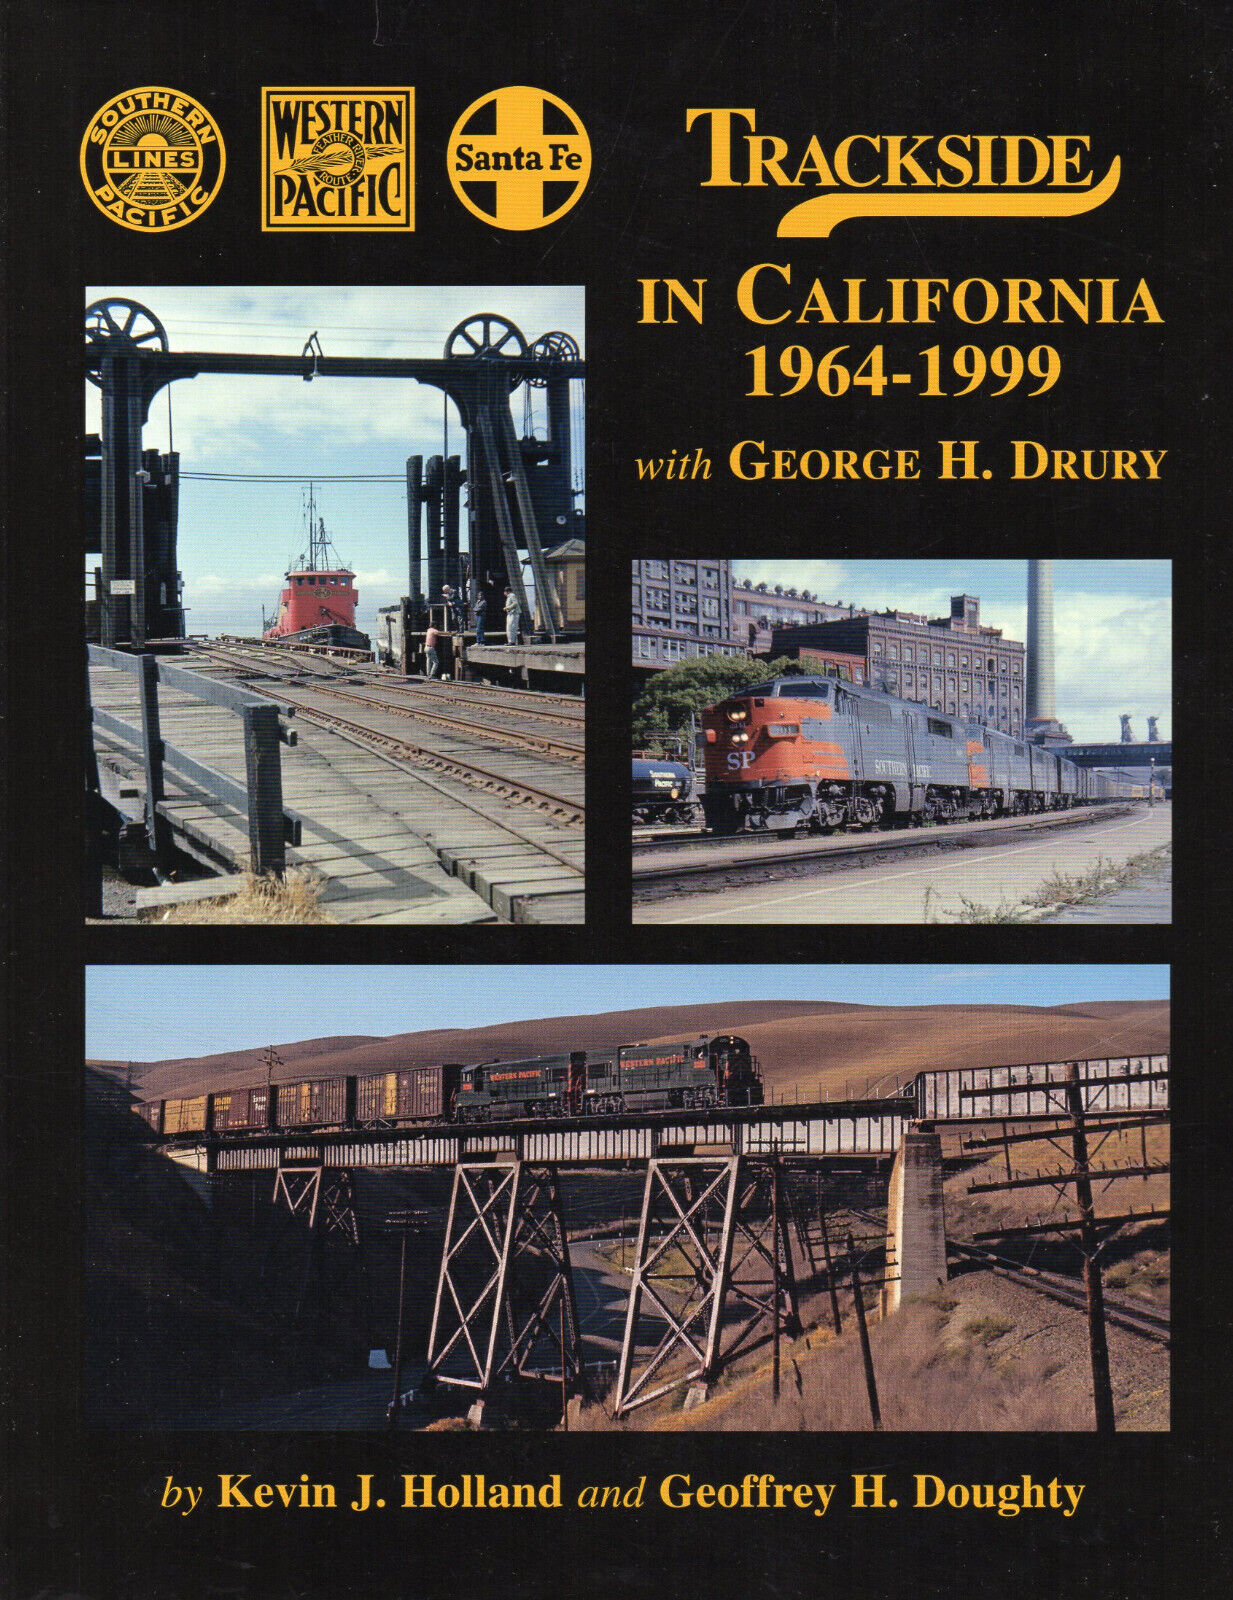 TRACKSIDE CALIFORNIA WESTERN PACIFIC SANTA FE SOUTHERN PACIFIC railroad